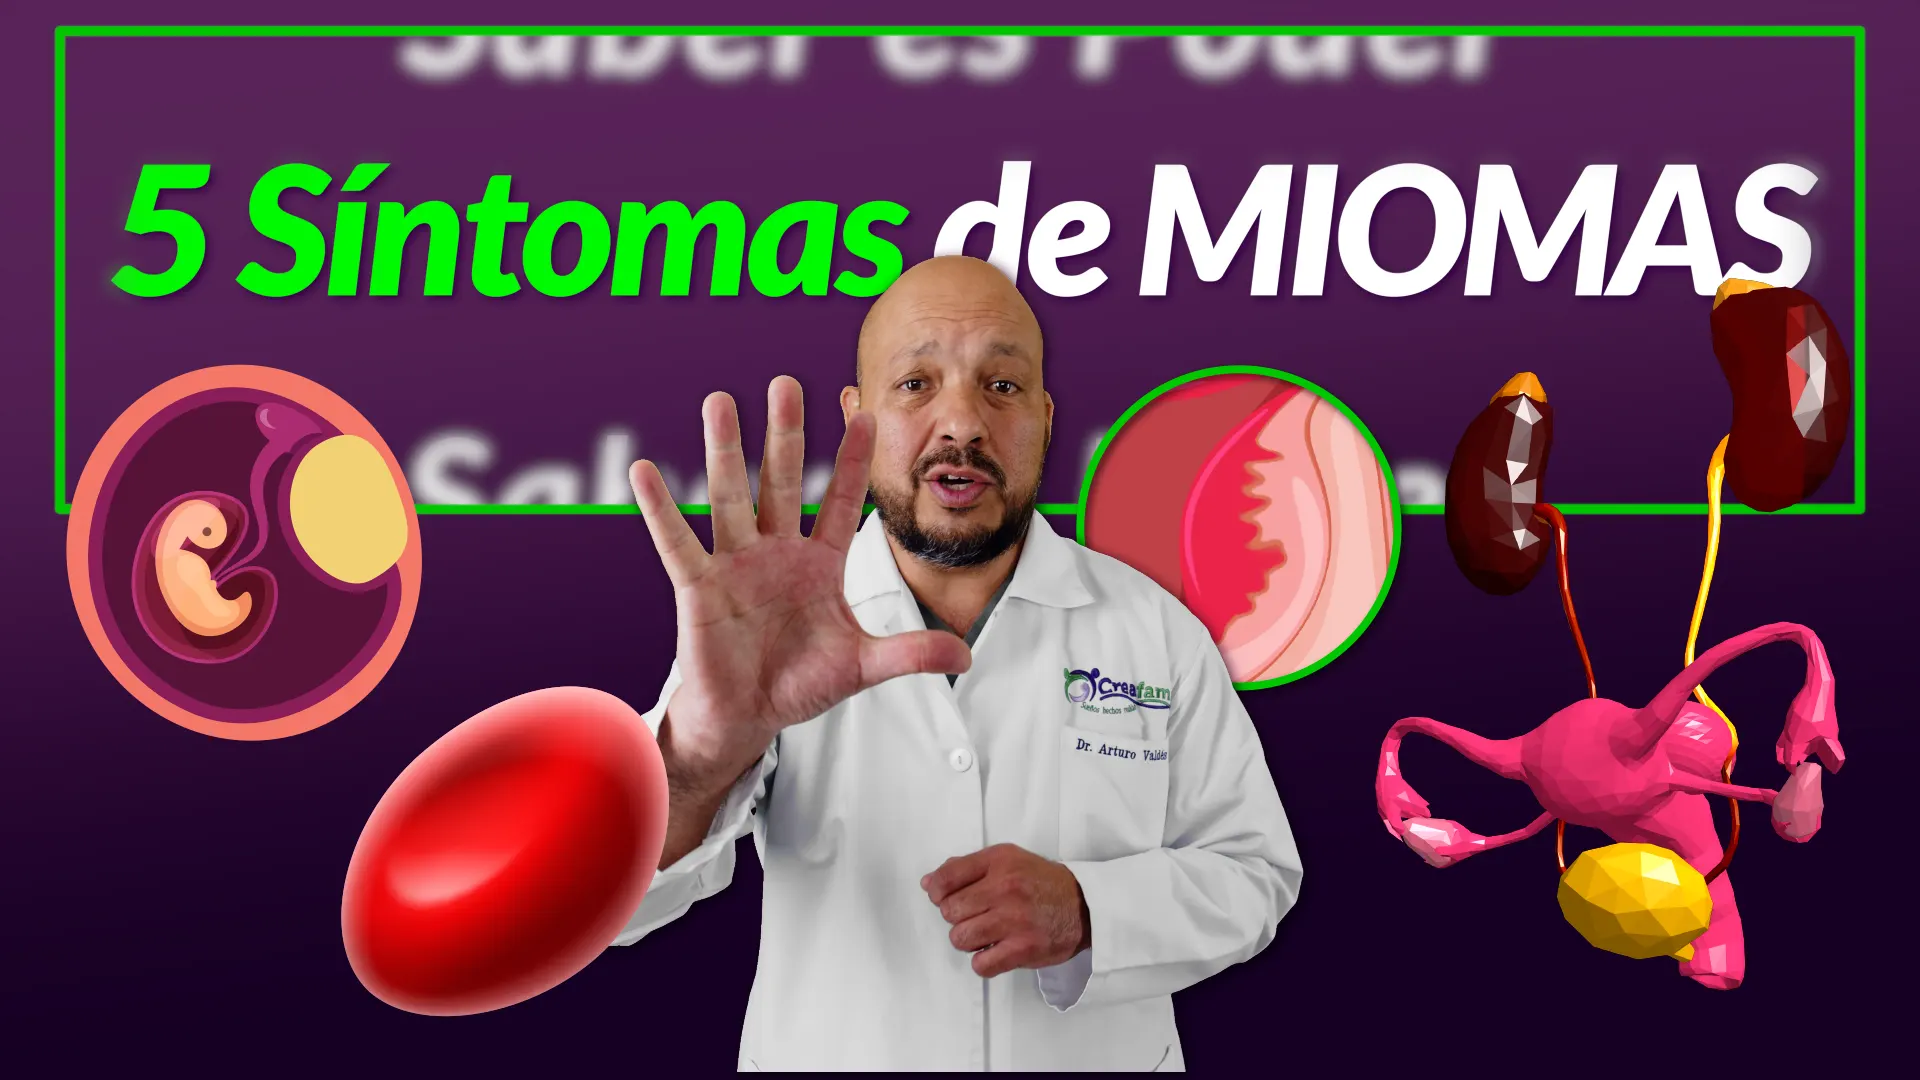 Síntomas Miomas. Sangrados, Abultamiento, Estreñimiento, Infertilidad, Anemia